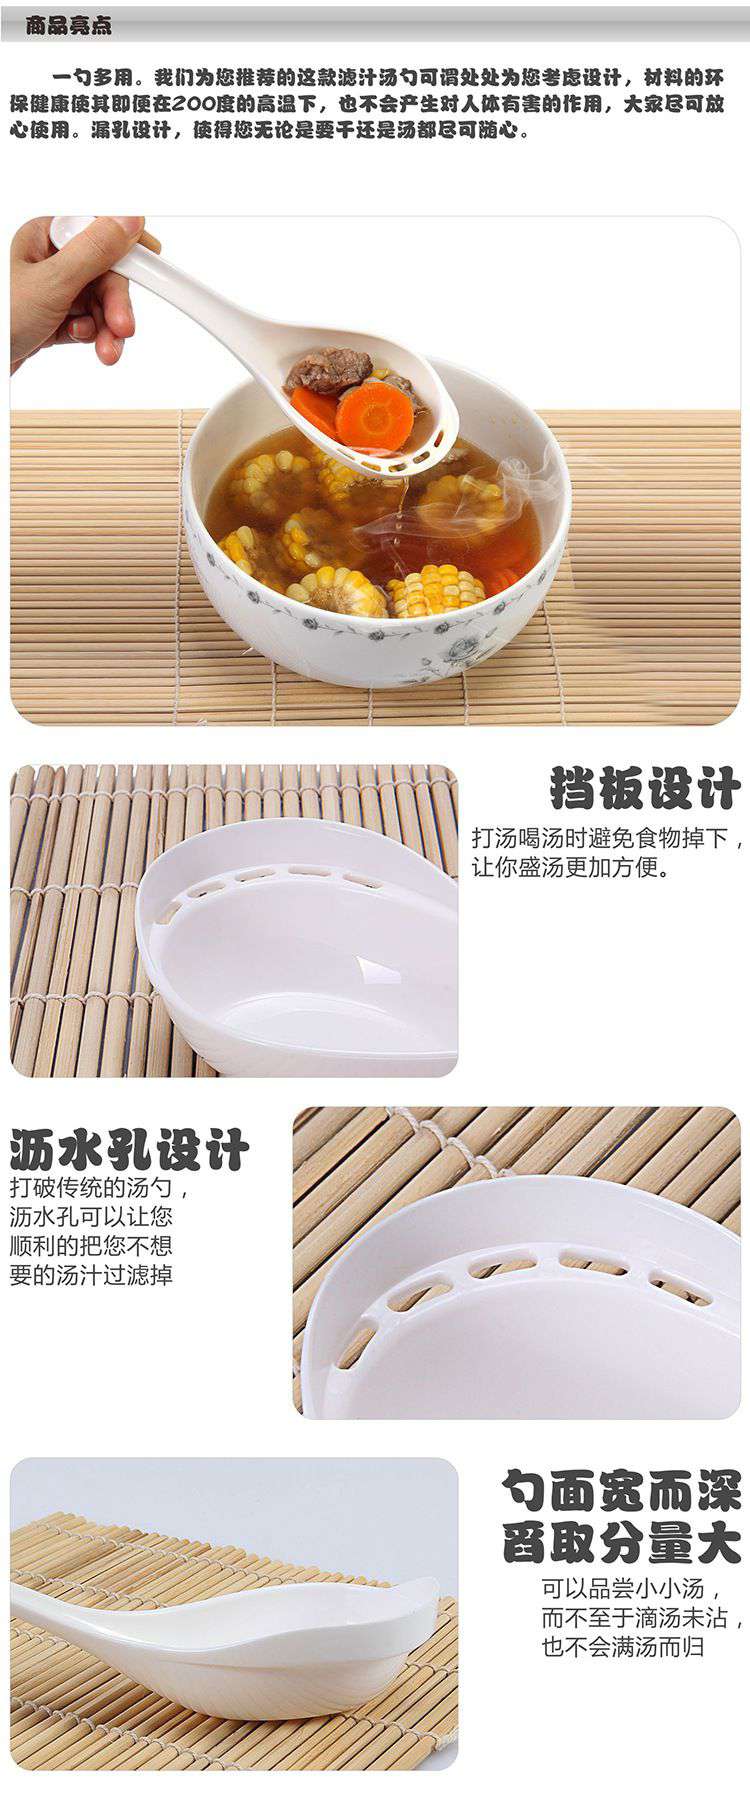 兩用便利創意湯匙 火鍋特別設計漏湯湯匙1